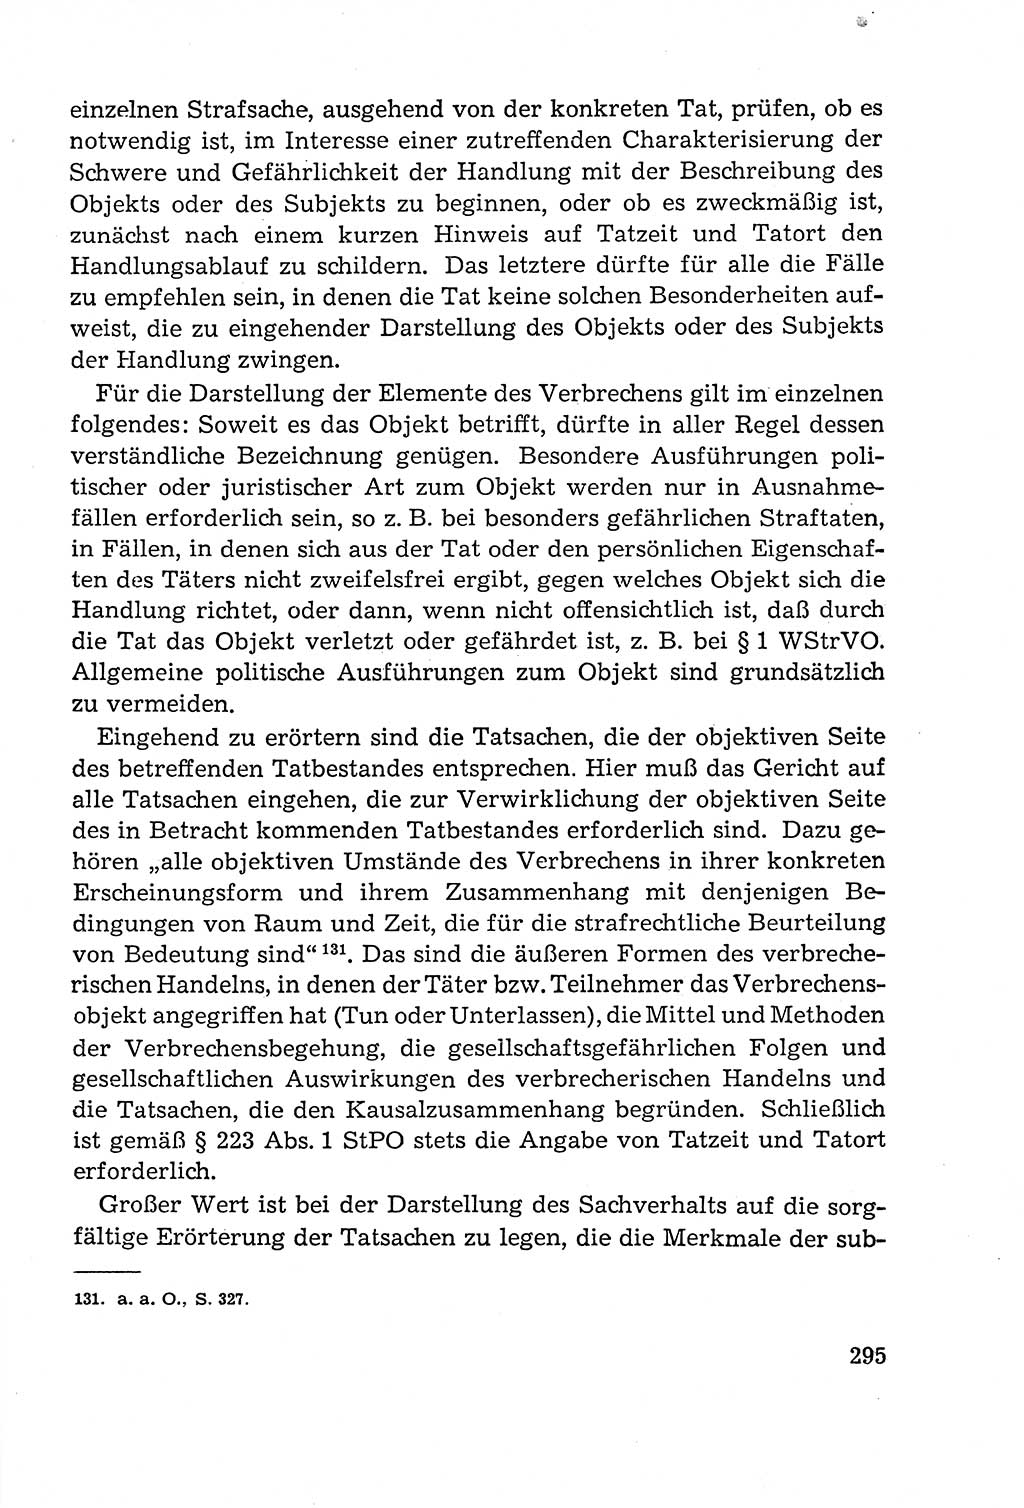 Leitfaden des Strafprozeßrechts der Deutschen Demokratischen Republik (DDR) 1959, Seite 295 (LF StPR DDR 1959, S. 295)